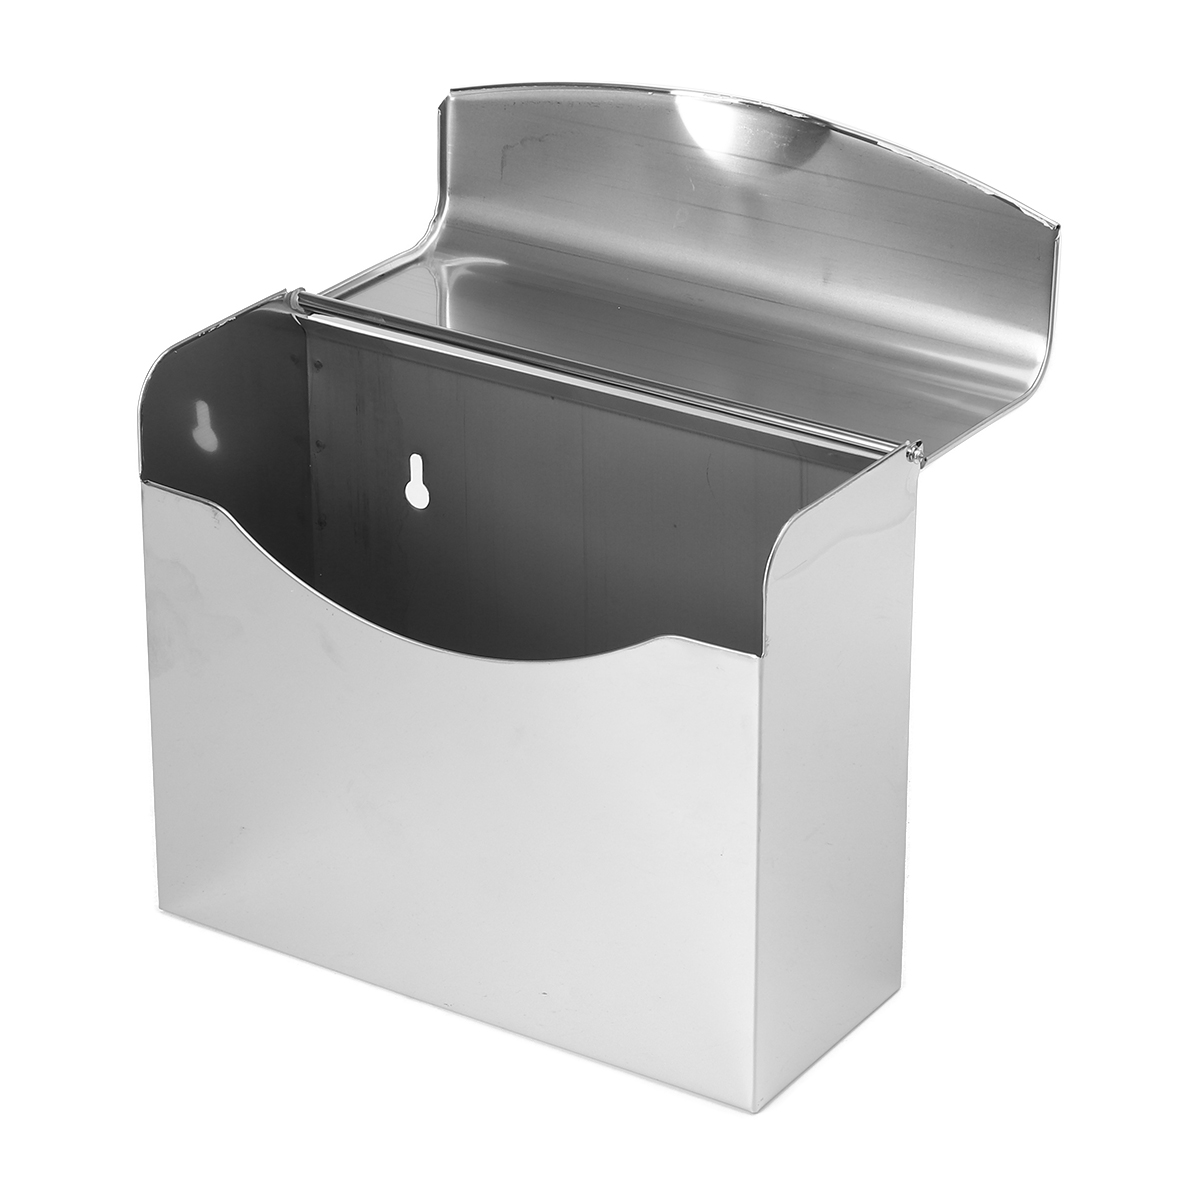 Stainless-Steel-Towel-Dispenser-Toilet-Paper-Holder-Kitchen-Bath-Shelf-Holder-1627018-6